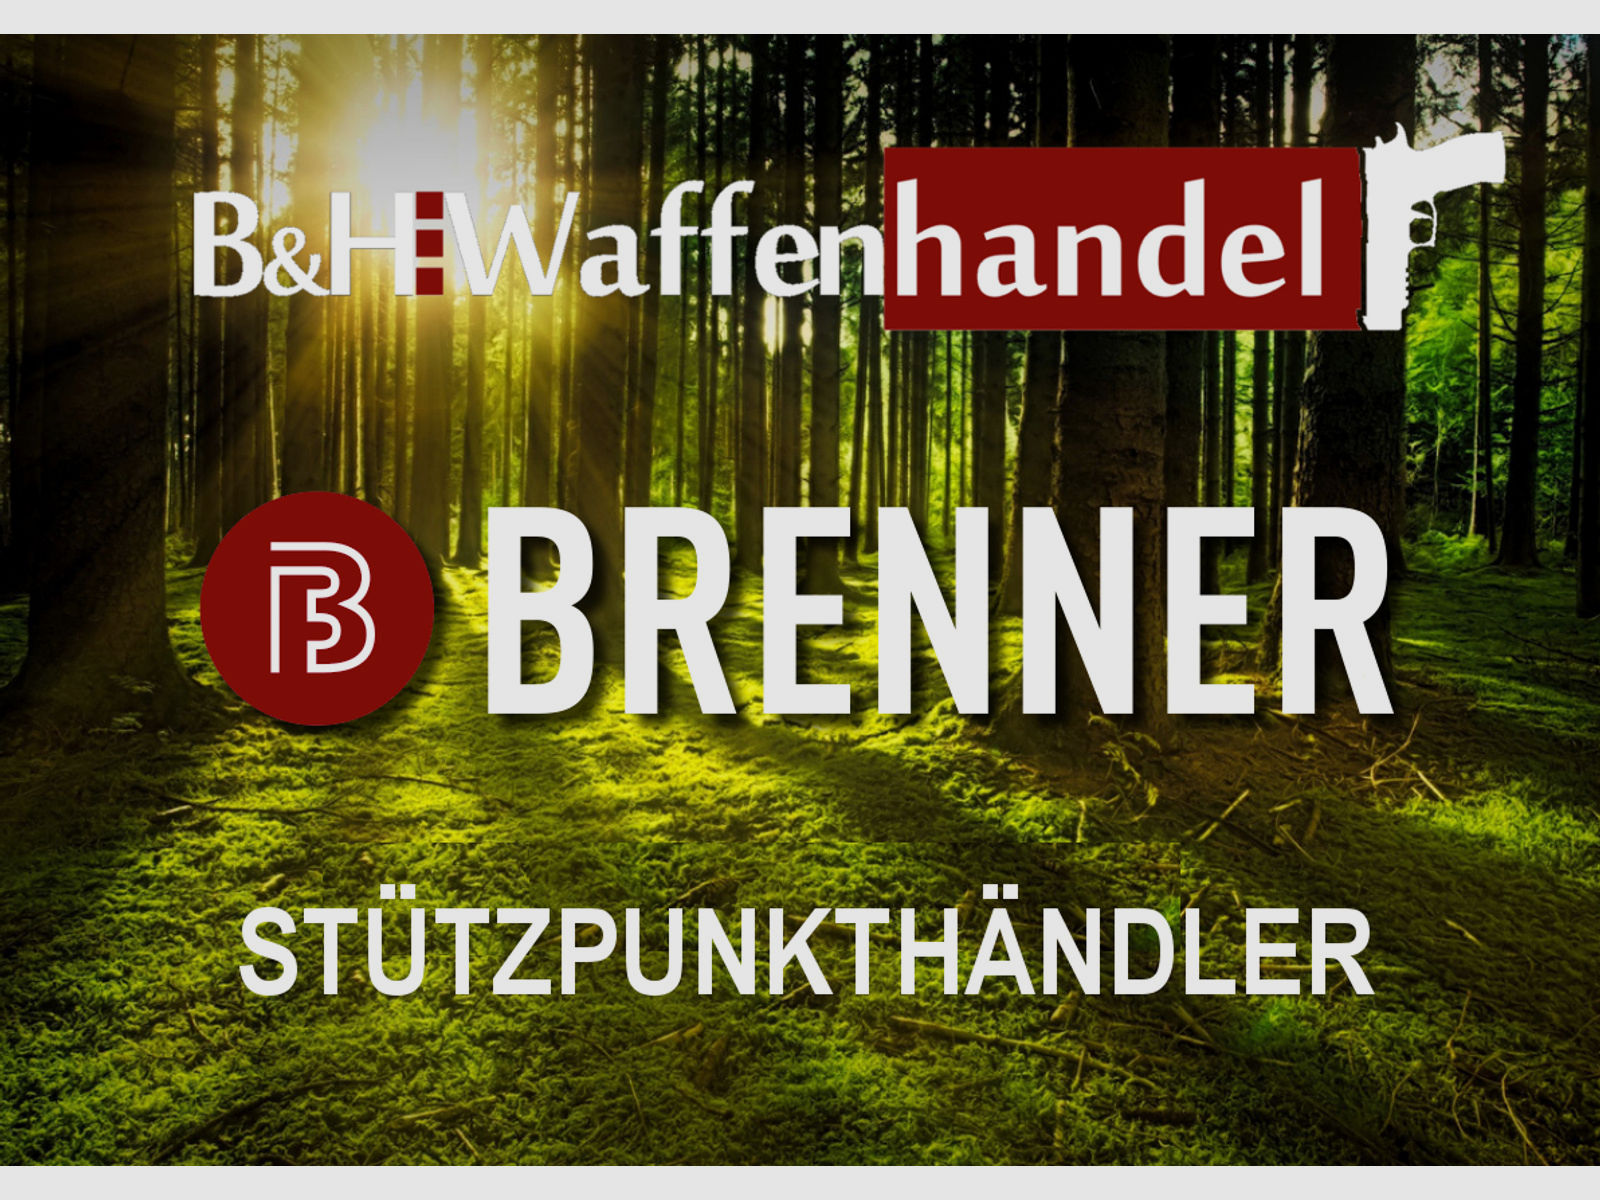 auf Lager: Brenner BR20 Walnuss mit Zeiss V4 3-12x56 (Best.Nr.: BR20WP2) Finanzierung möglich